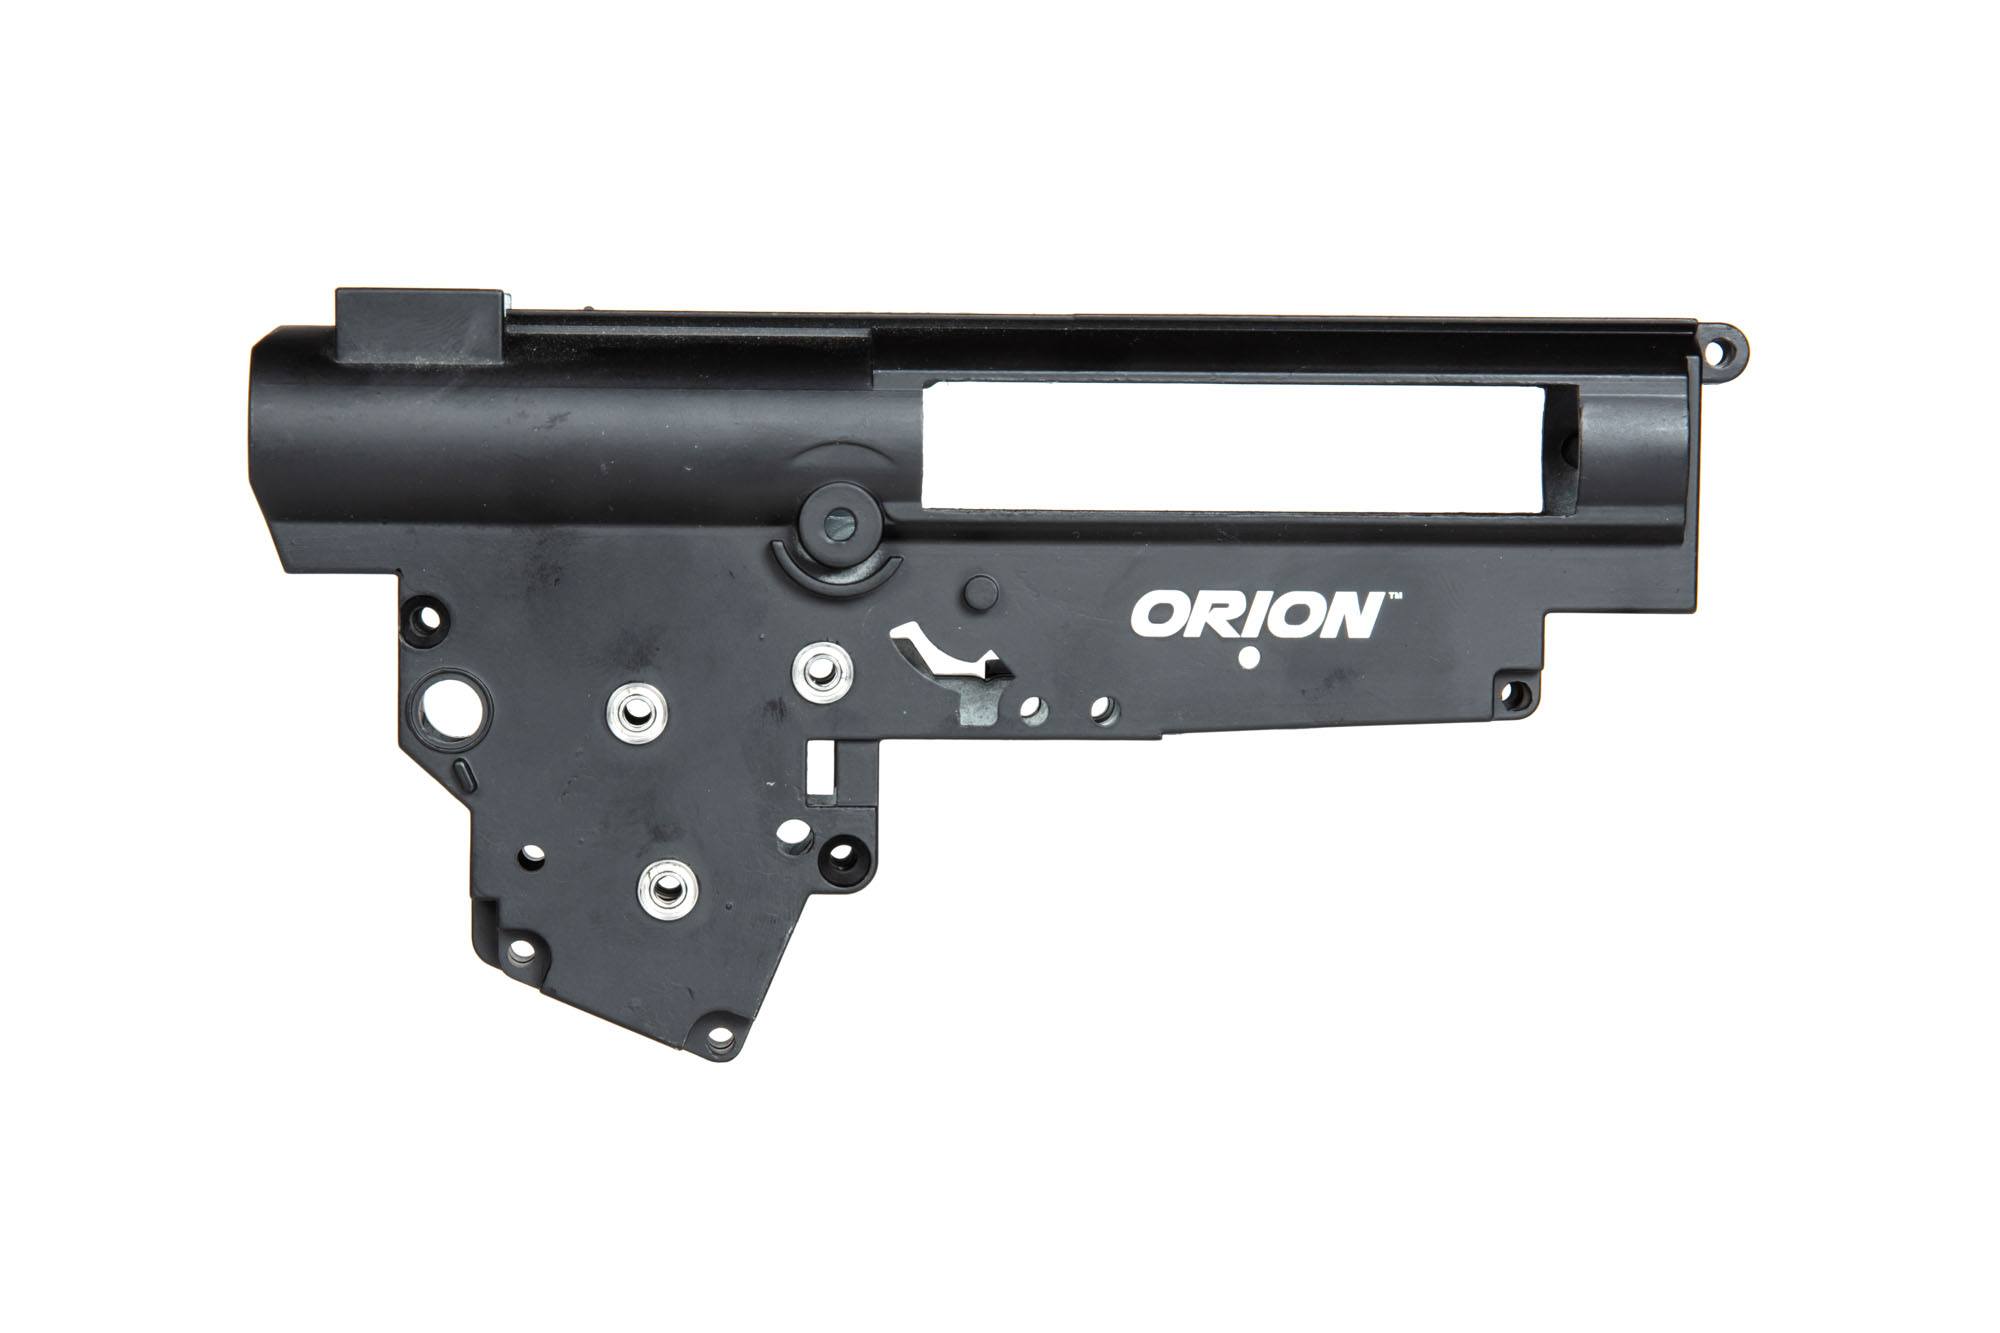 ORION™ V3 Getrieberahmen für AK Specna Arms EDGE™ Replicas